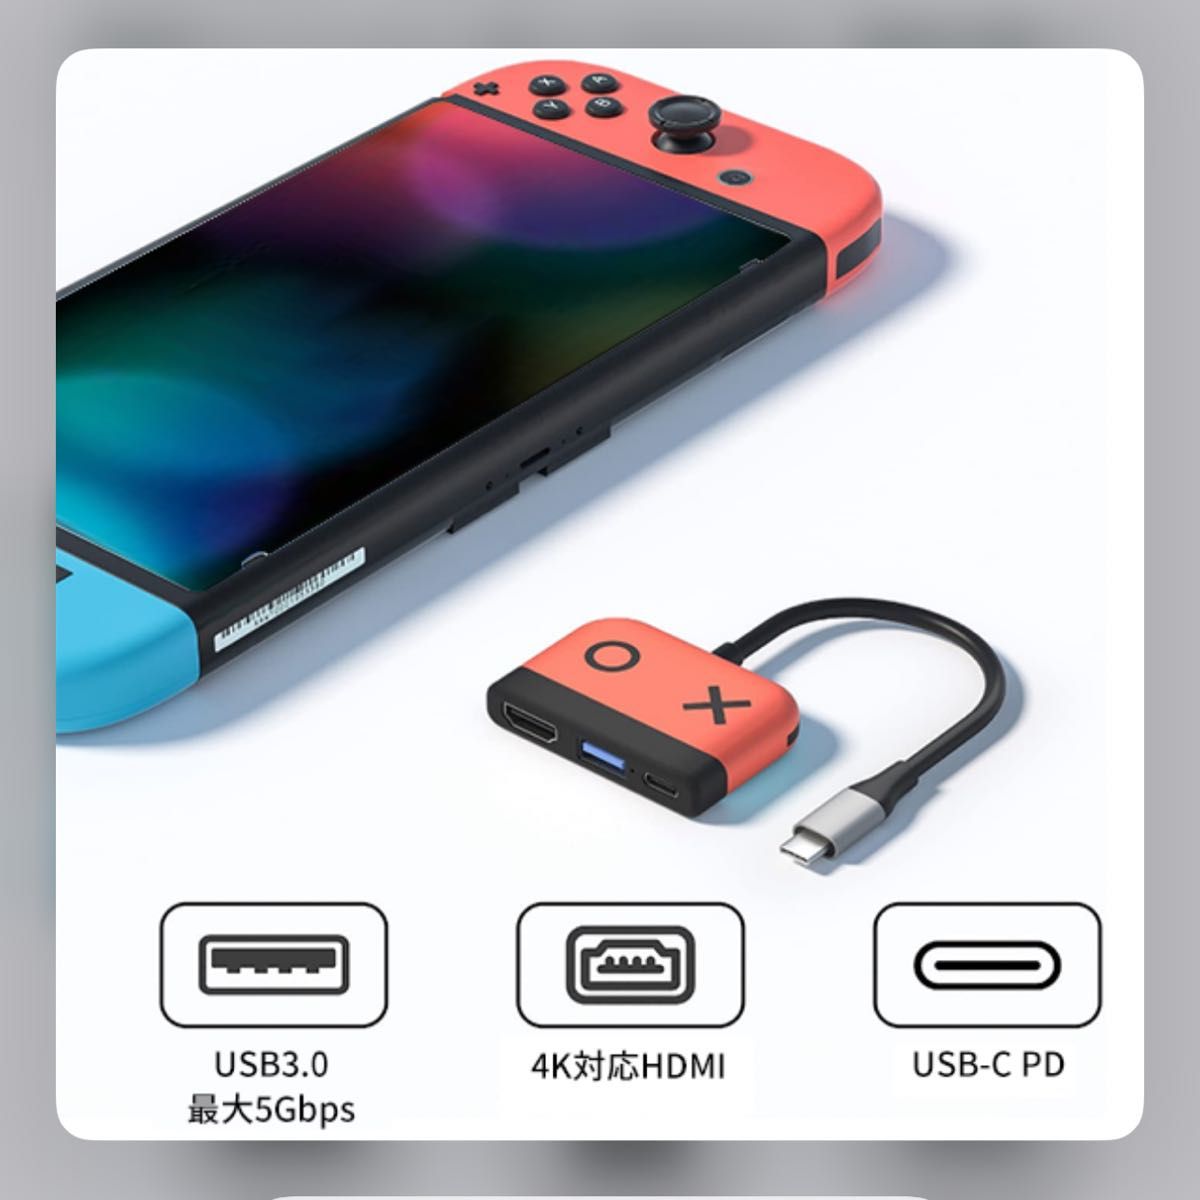 即日発送 プレゼント Nintendo Switch 多機能ドック 青 日本未発売 POWERDock 超軽量 便利 新品